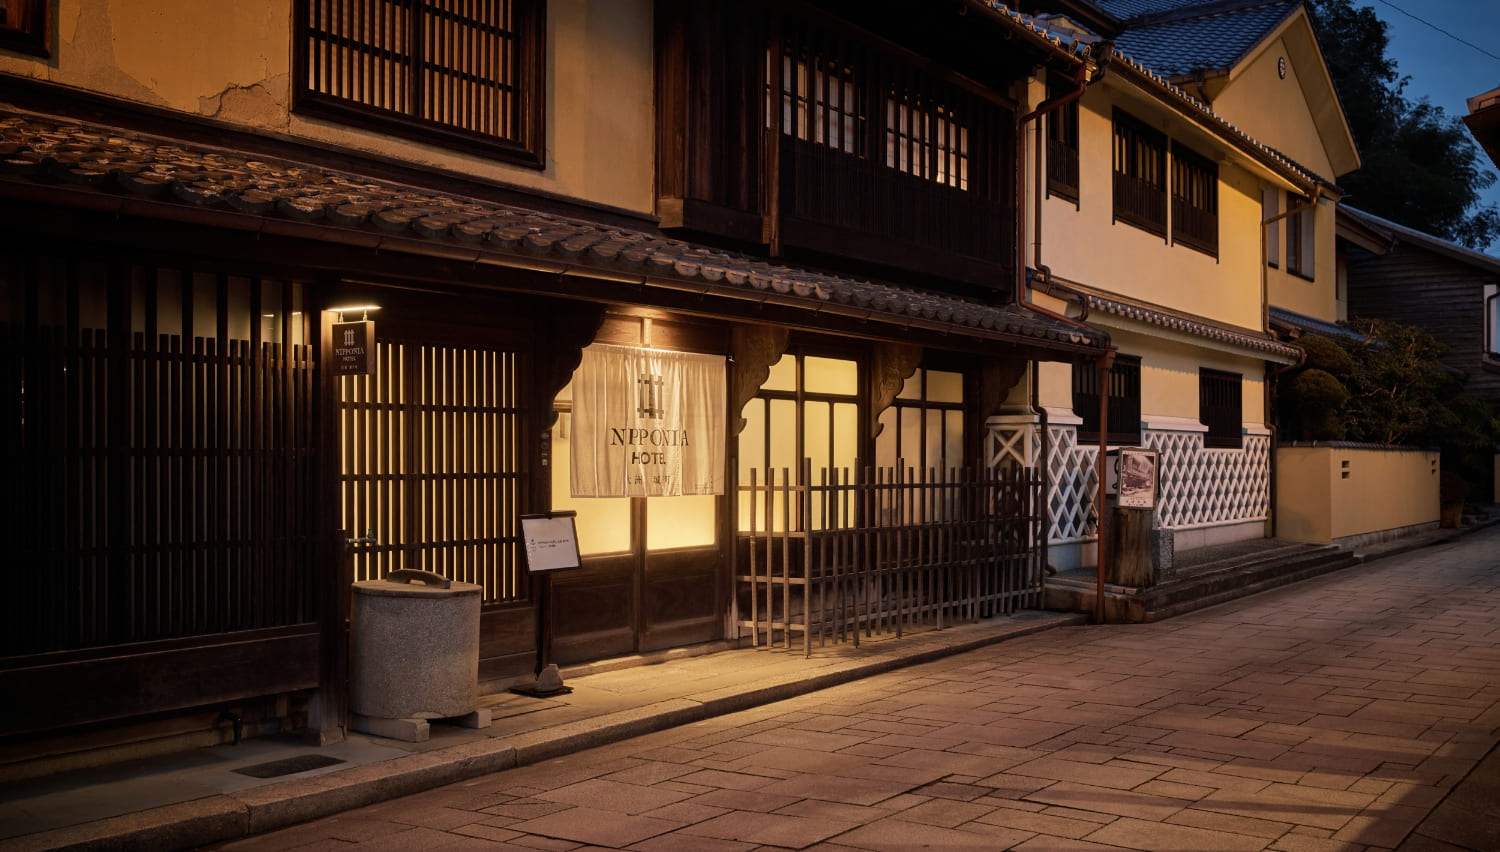 Nipponia Hotel Ozu Castle Town01